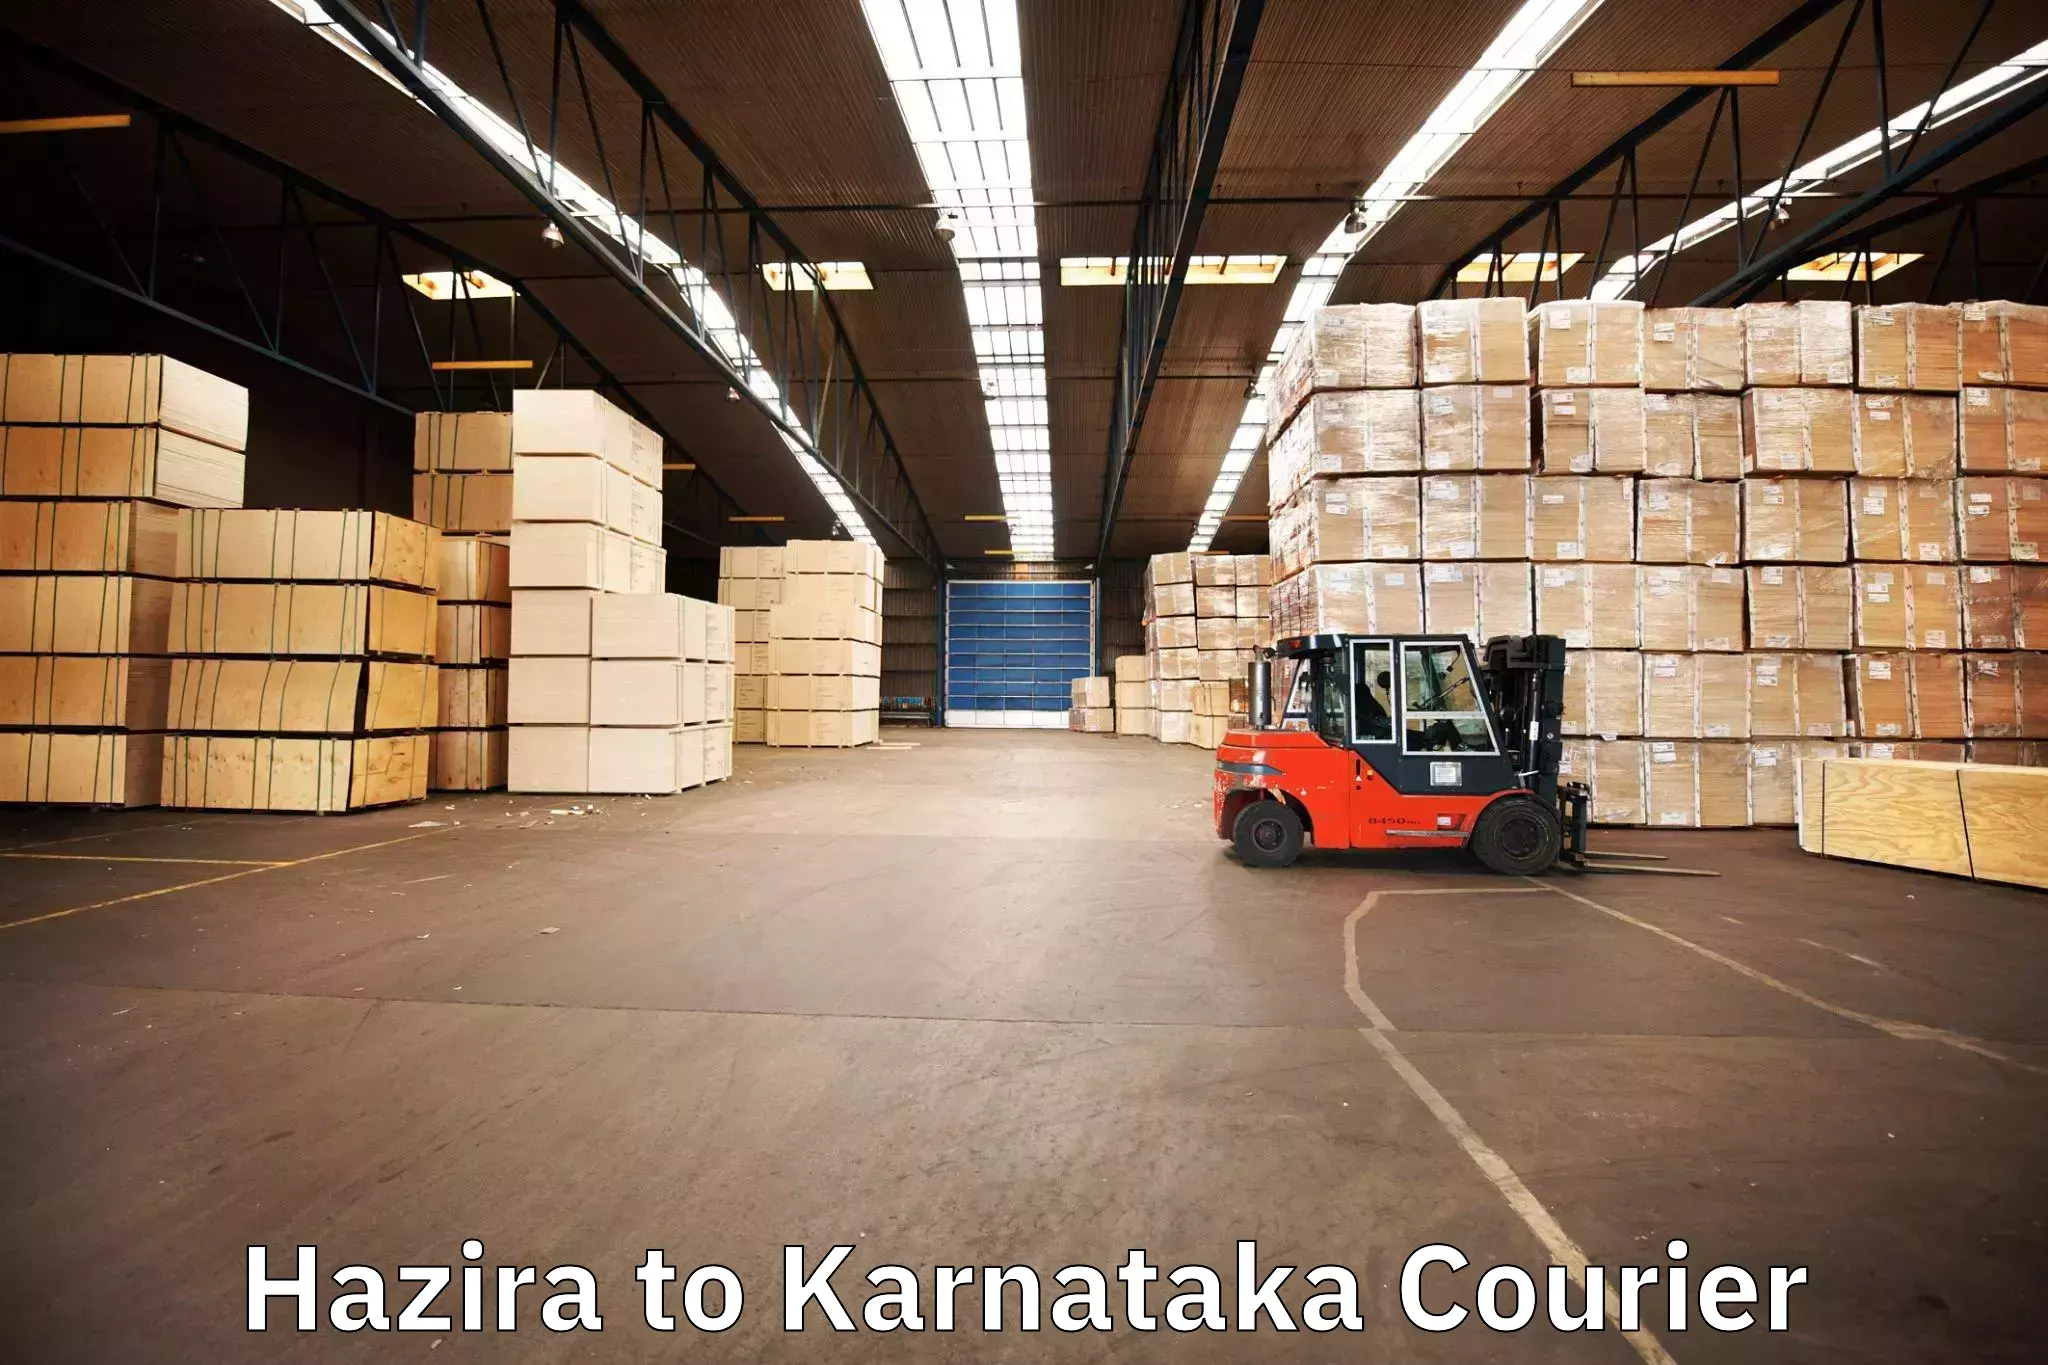 Expert goods movers in Hazira to Thirthahalli